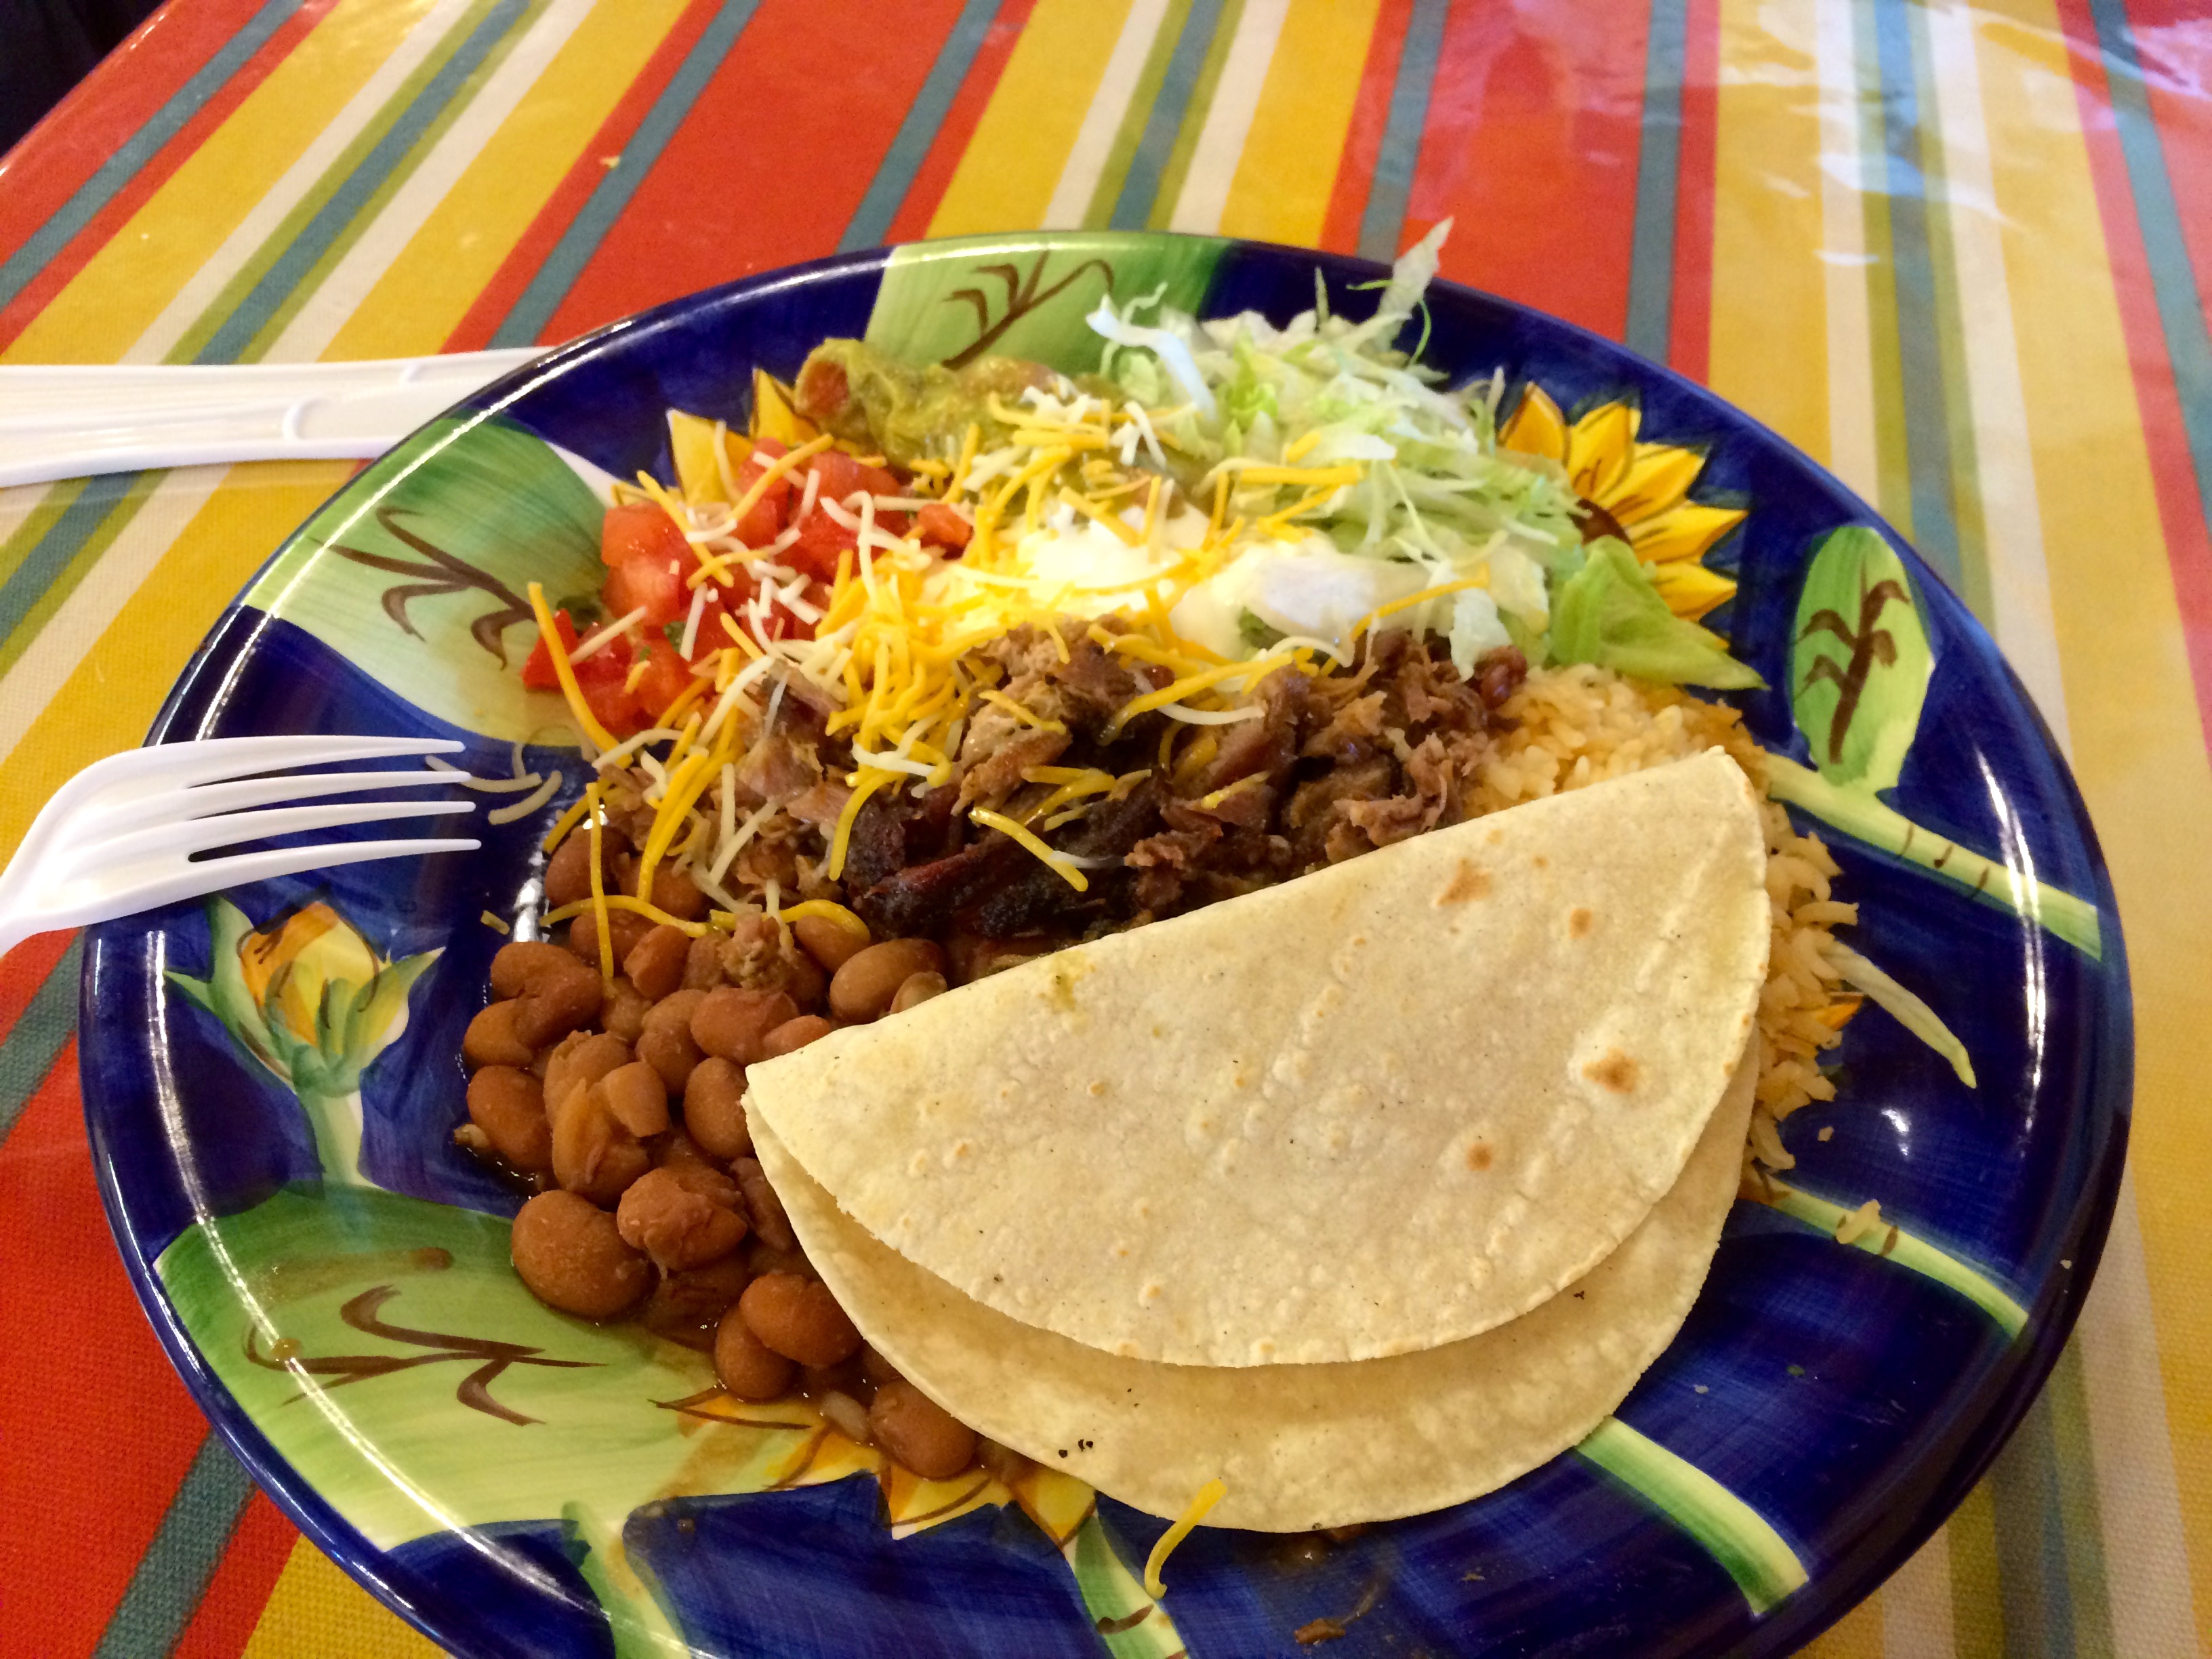 Mexican Plates Oscar's Burritos